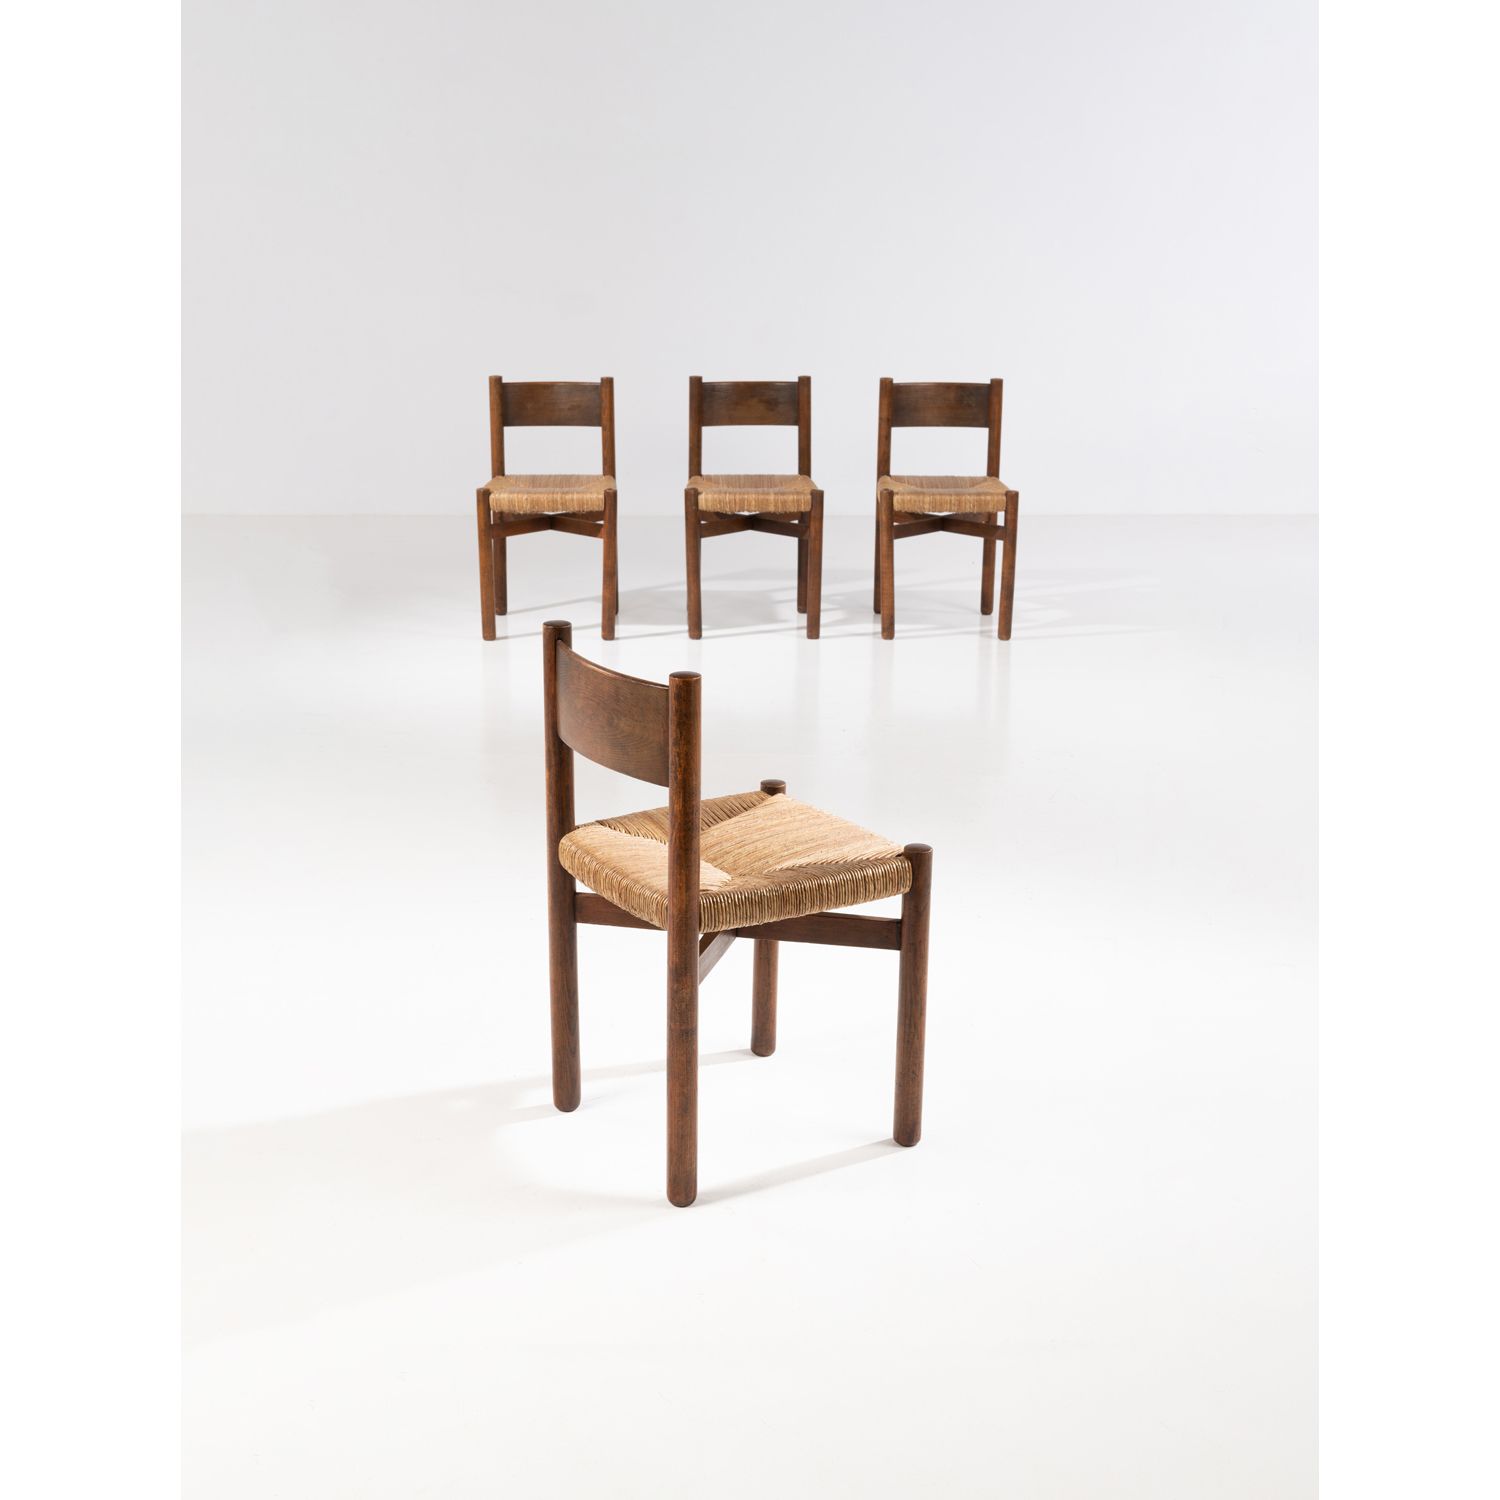 Null 夏洛特-佩里昂 (1903-1999)

梅里贝尔

四张椅子的套间

染色的橡木和编织的稻草

斯蒂芬-西蒙版

创建于1964年的模型

高76×&hellip;